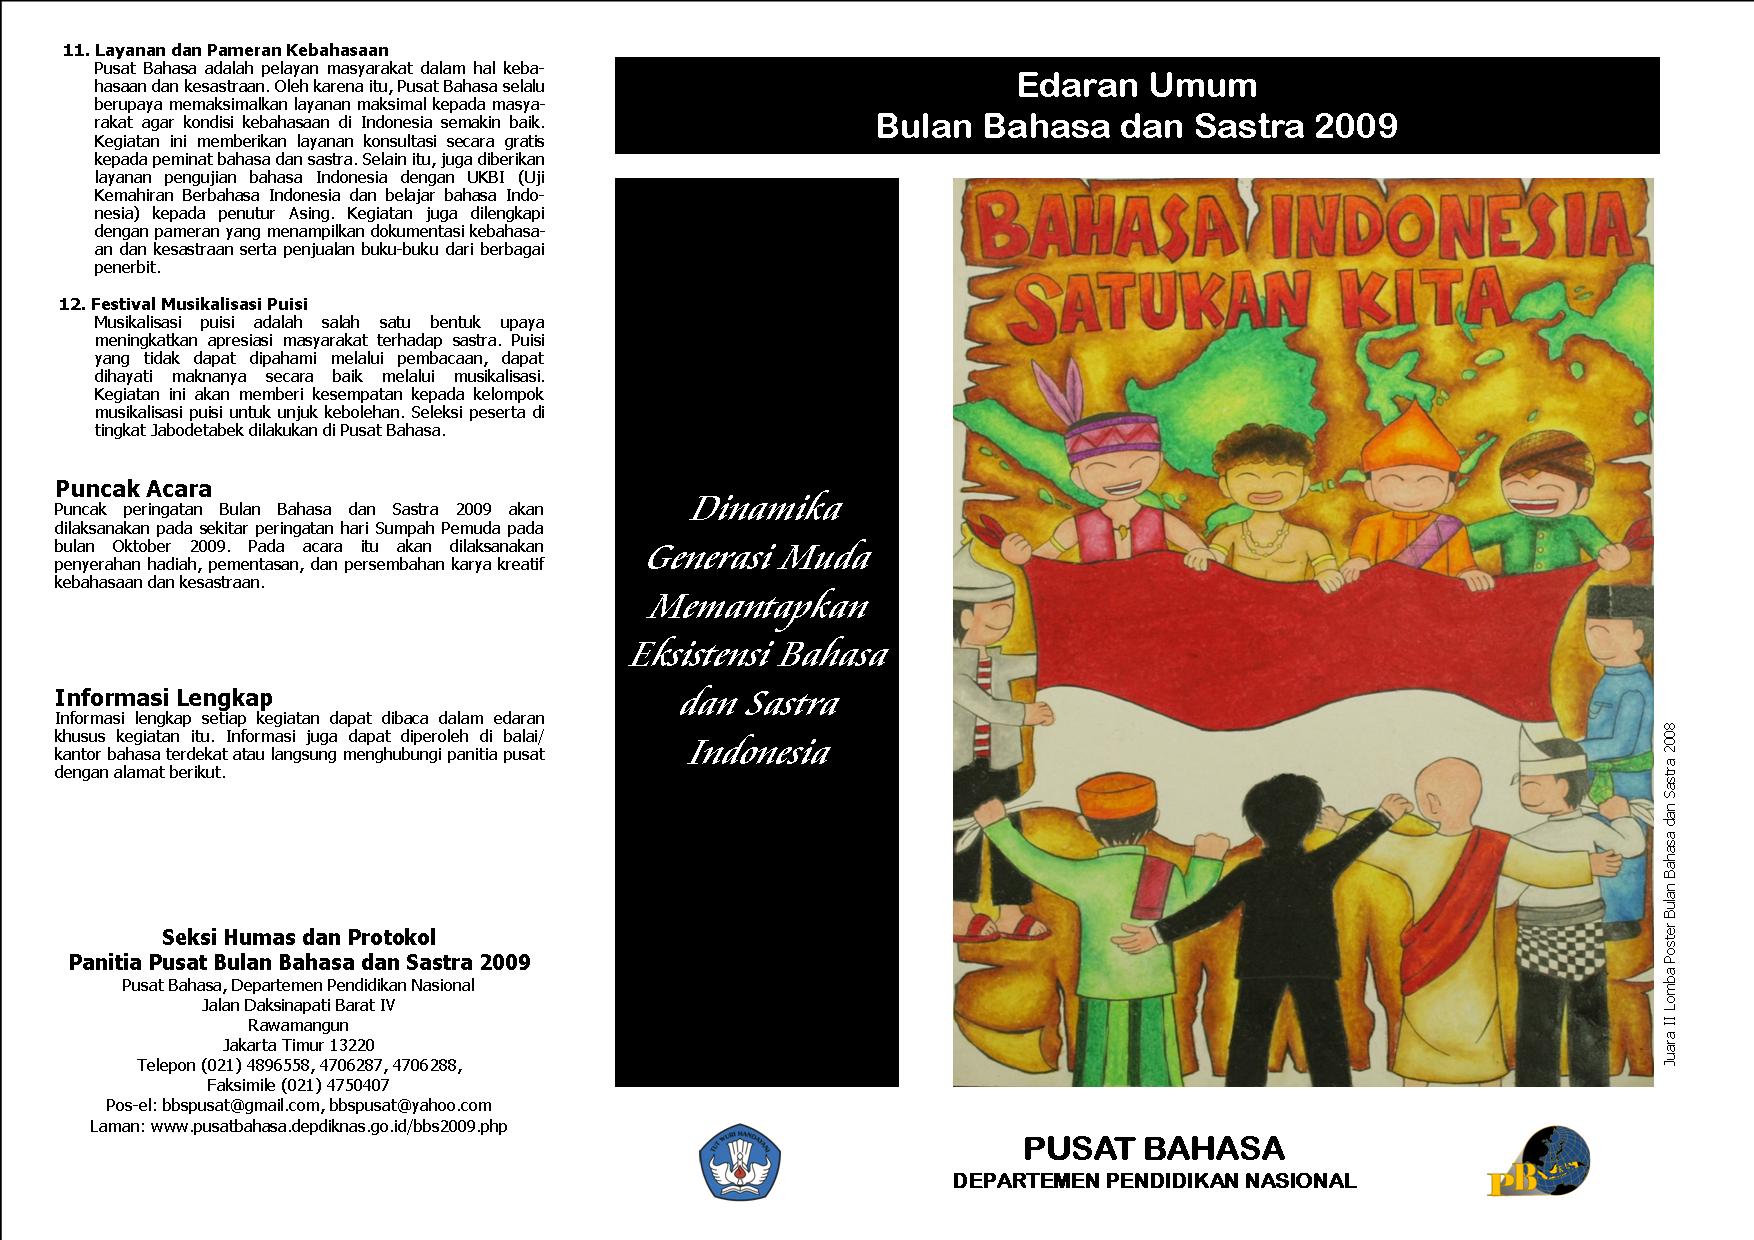 Edaran Umum Bulan Bahasa Dan Sastra 2009